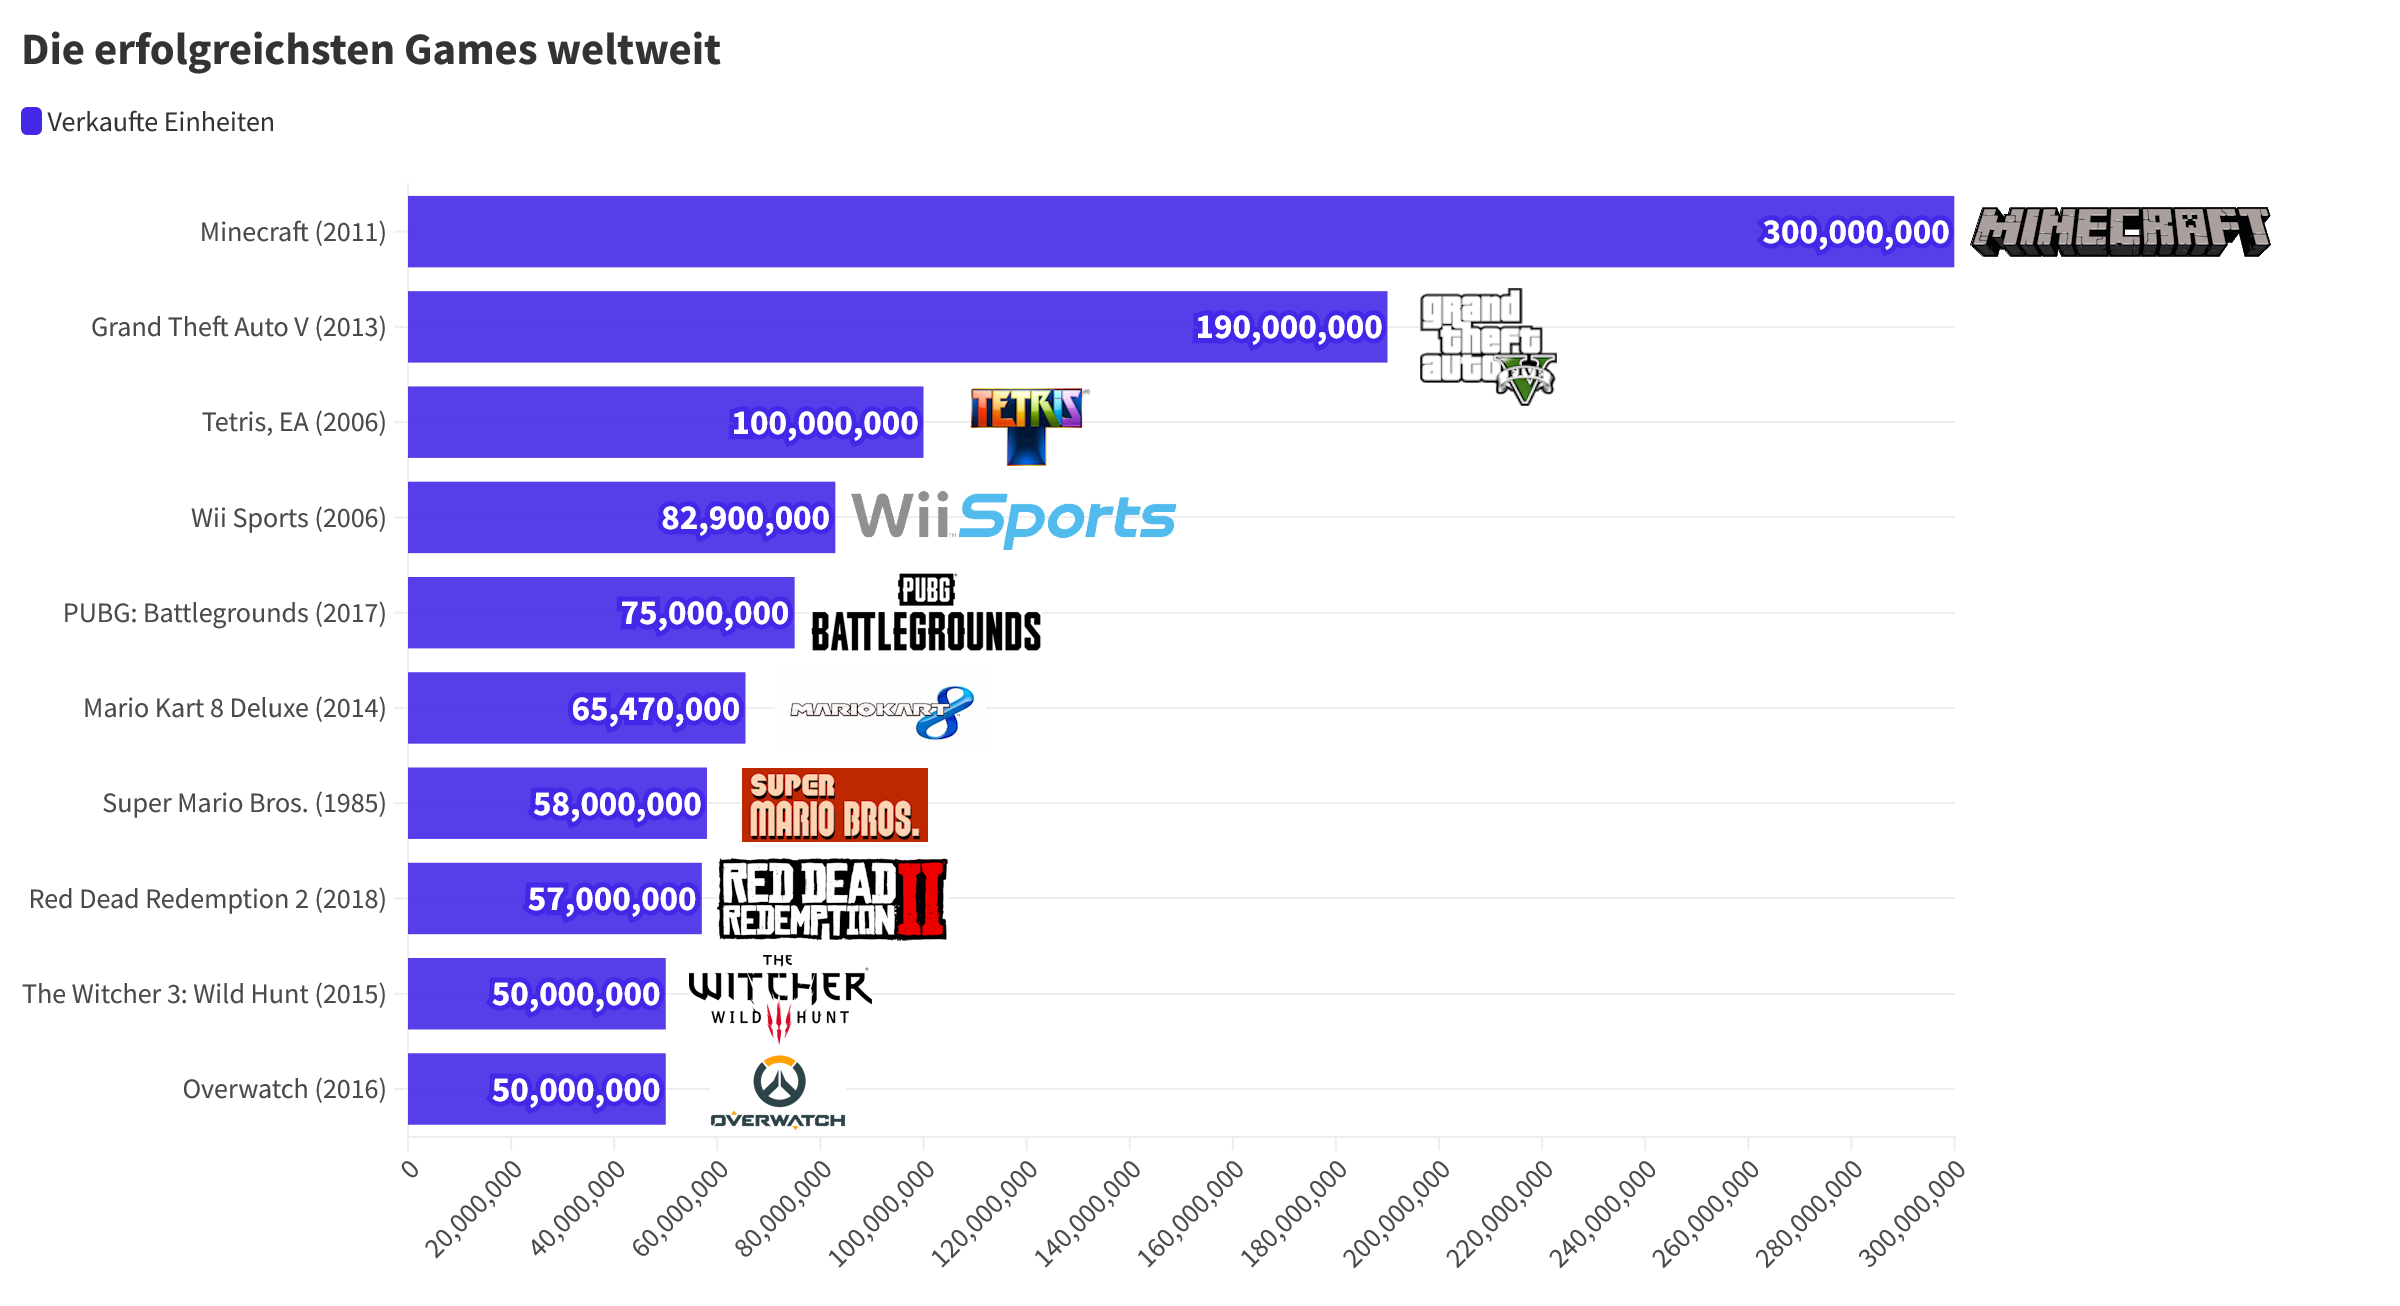 Ein Bar-Chart der meistverkauften Games. Auf Platz 1 steht Minecraft mit über 300 Mio. verkauften Spielen.